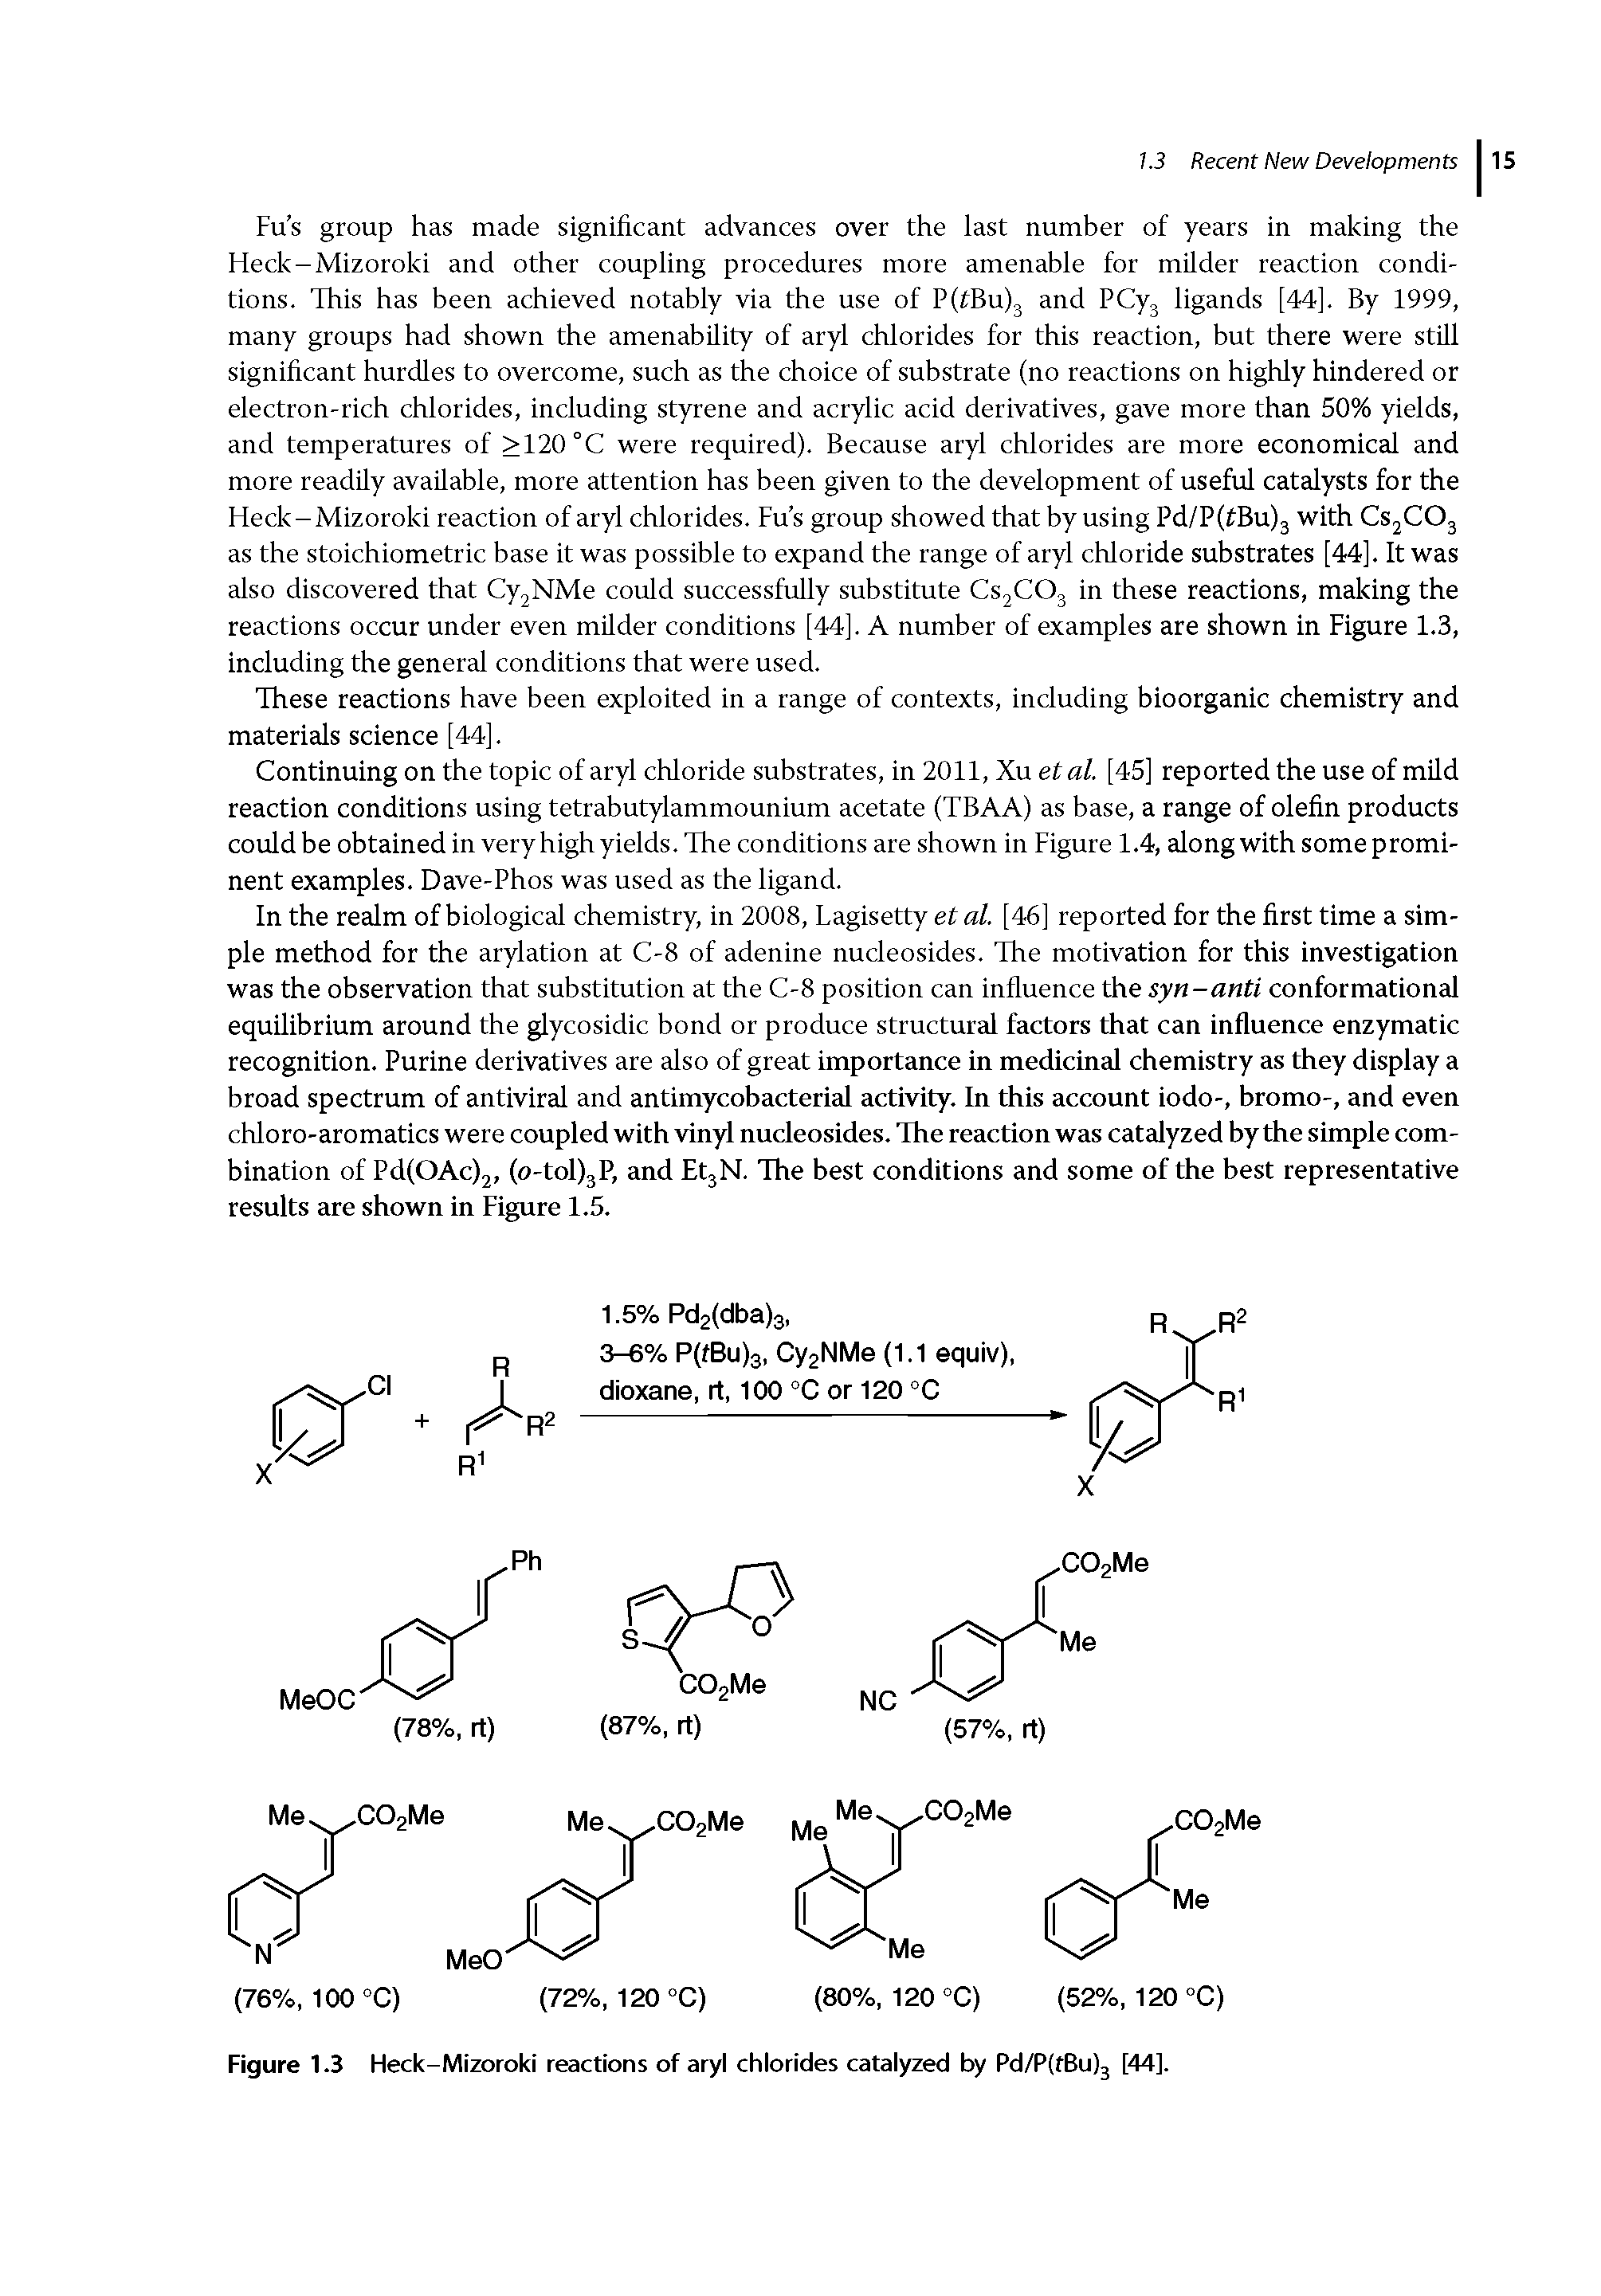 Figure 1.3 Heck-Mizoroki reactions of aryl chlorides catalyzed by Pd/PftBulj [44].